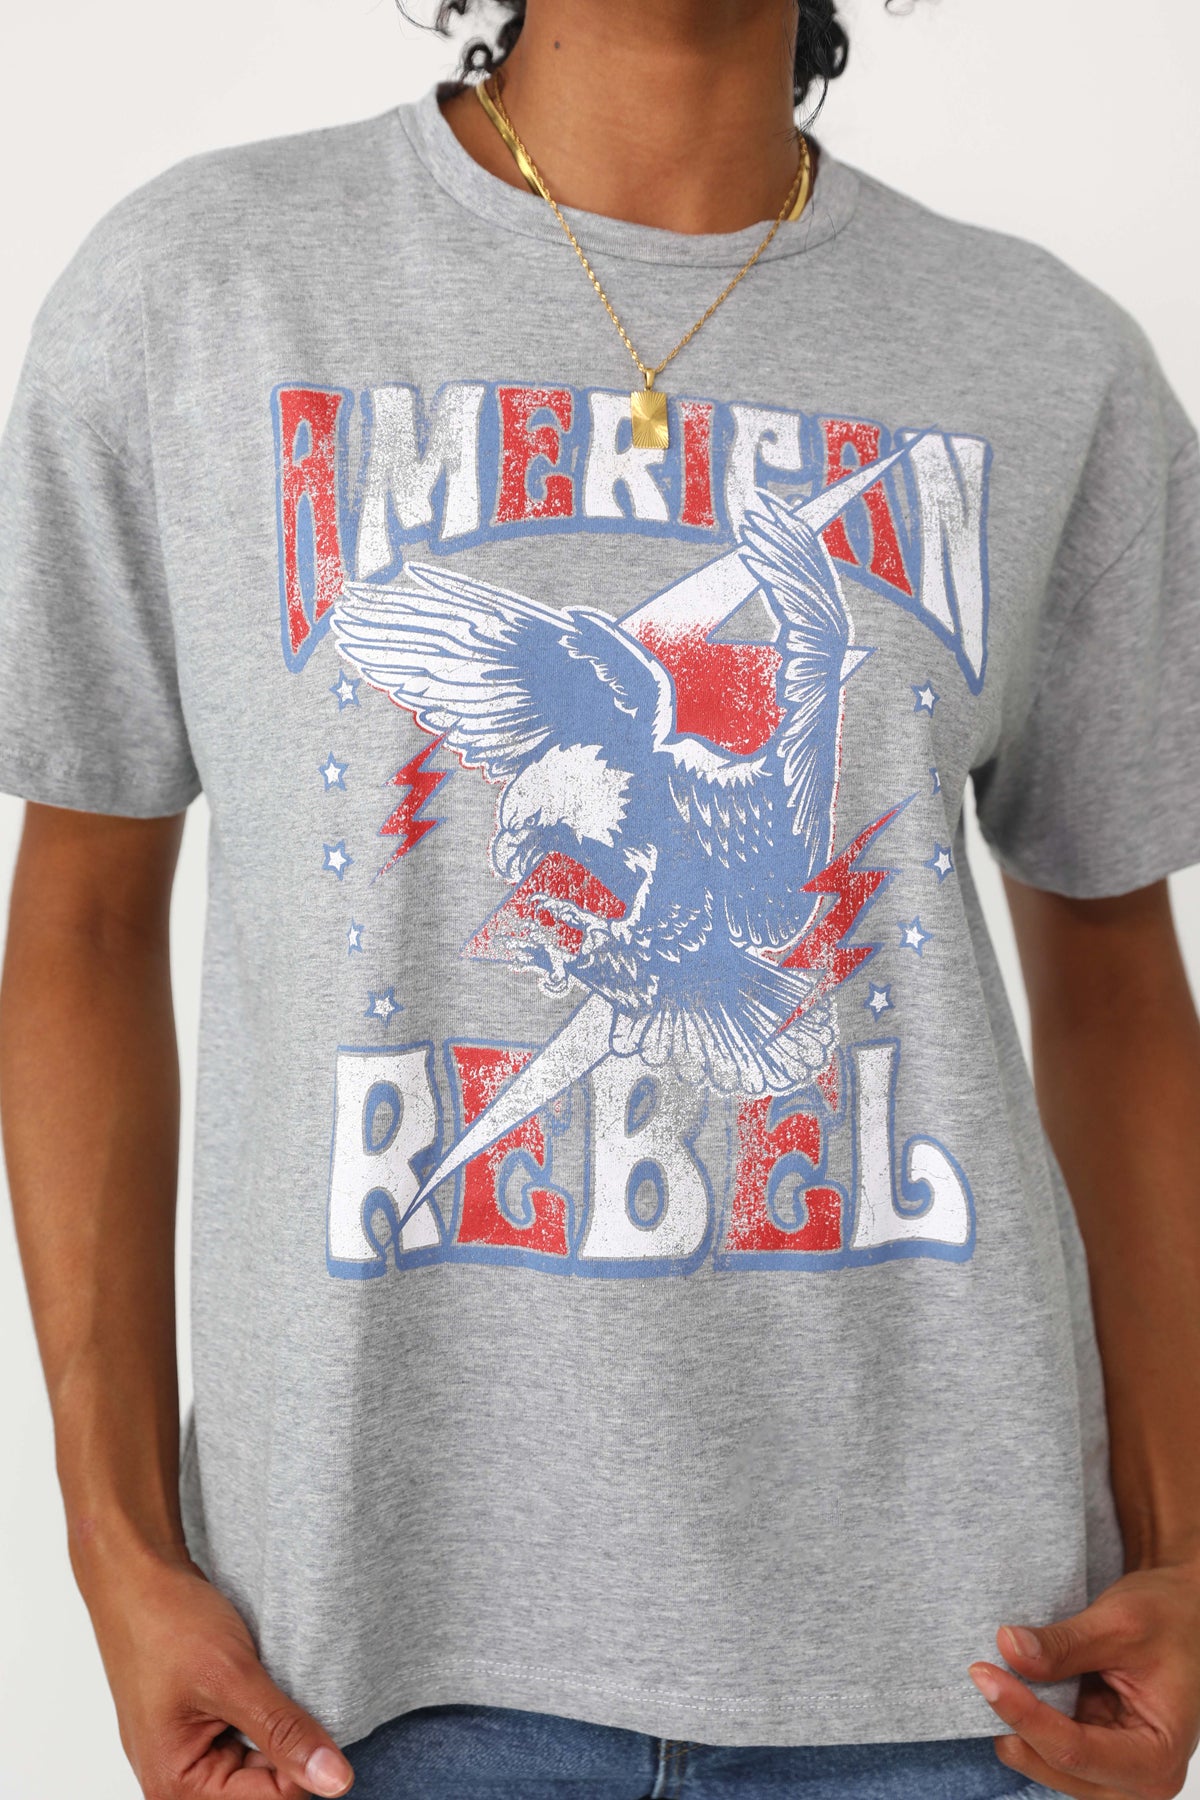 Model wearing the American Rebel tee.